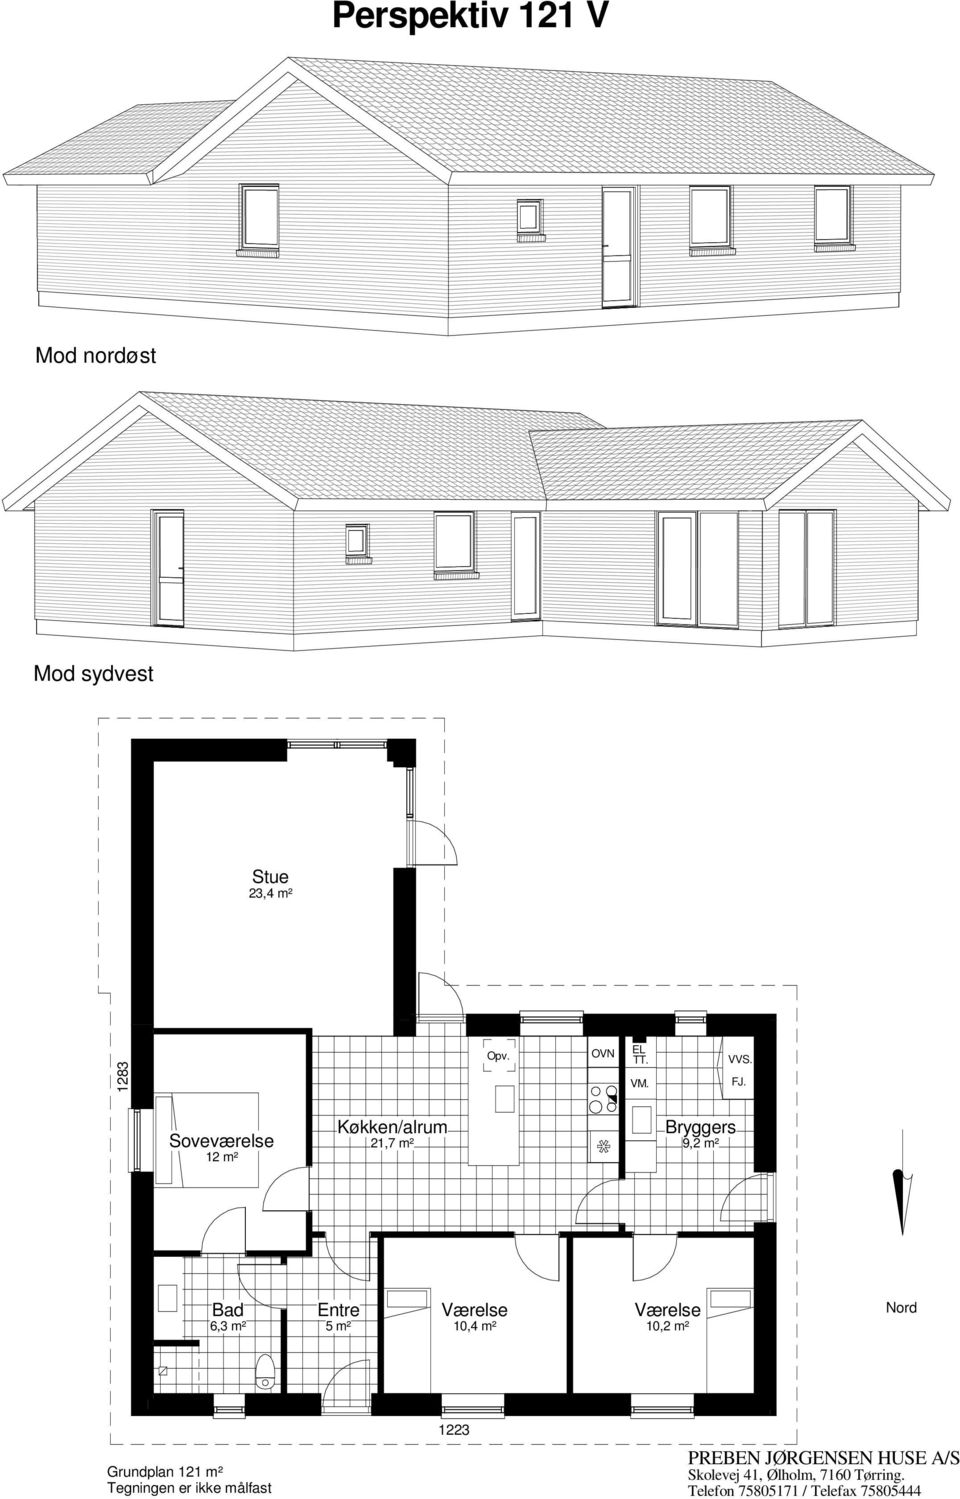 12 m² 21,7 m² 9,2 m² 6,3 m² 5 m²